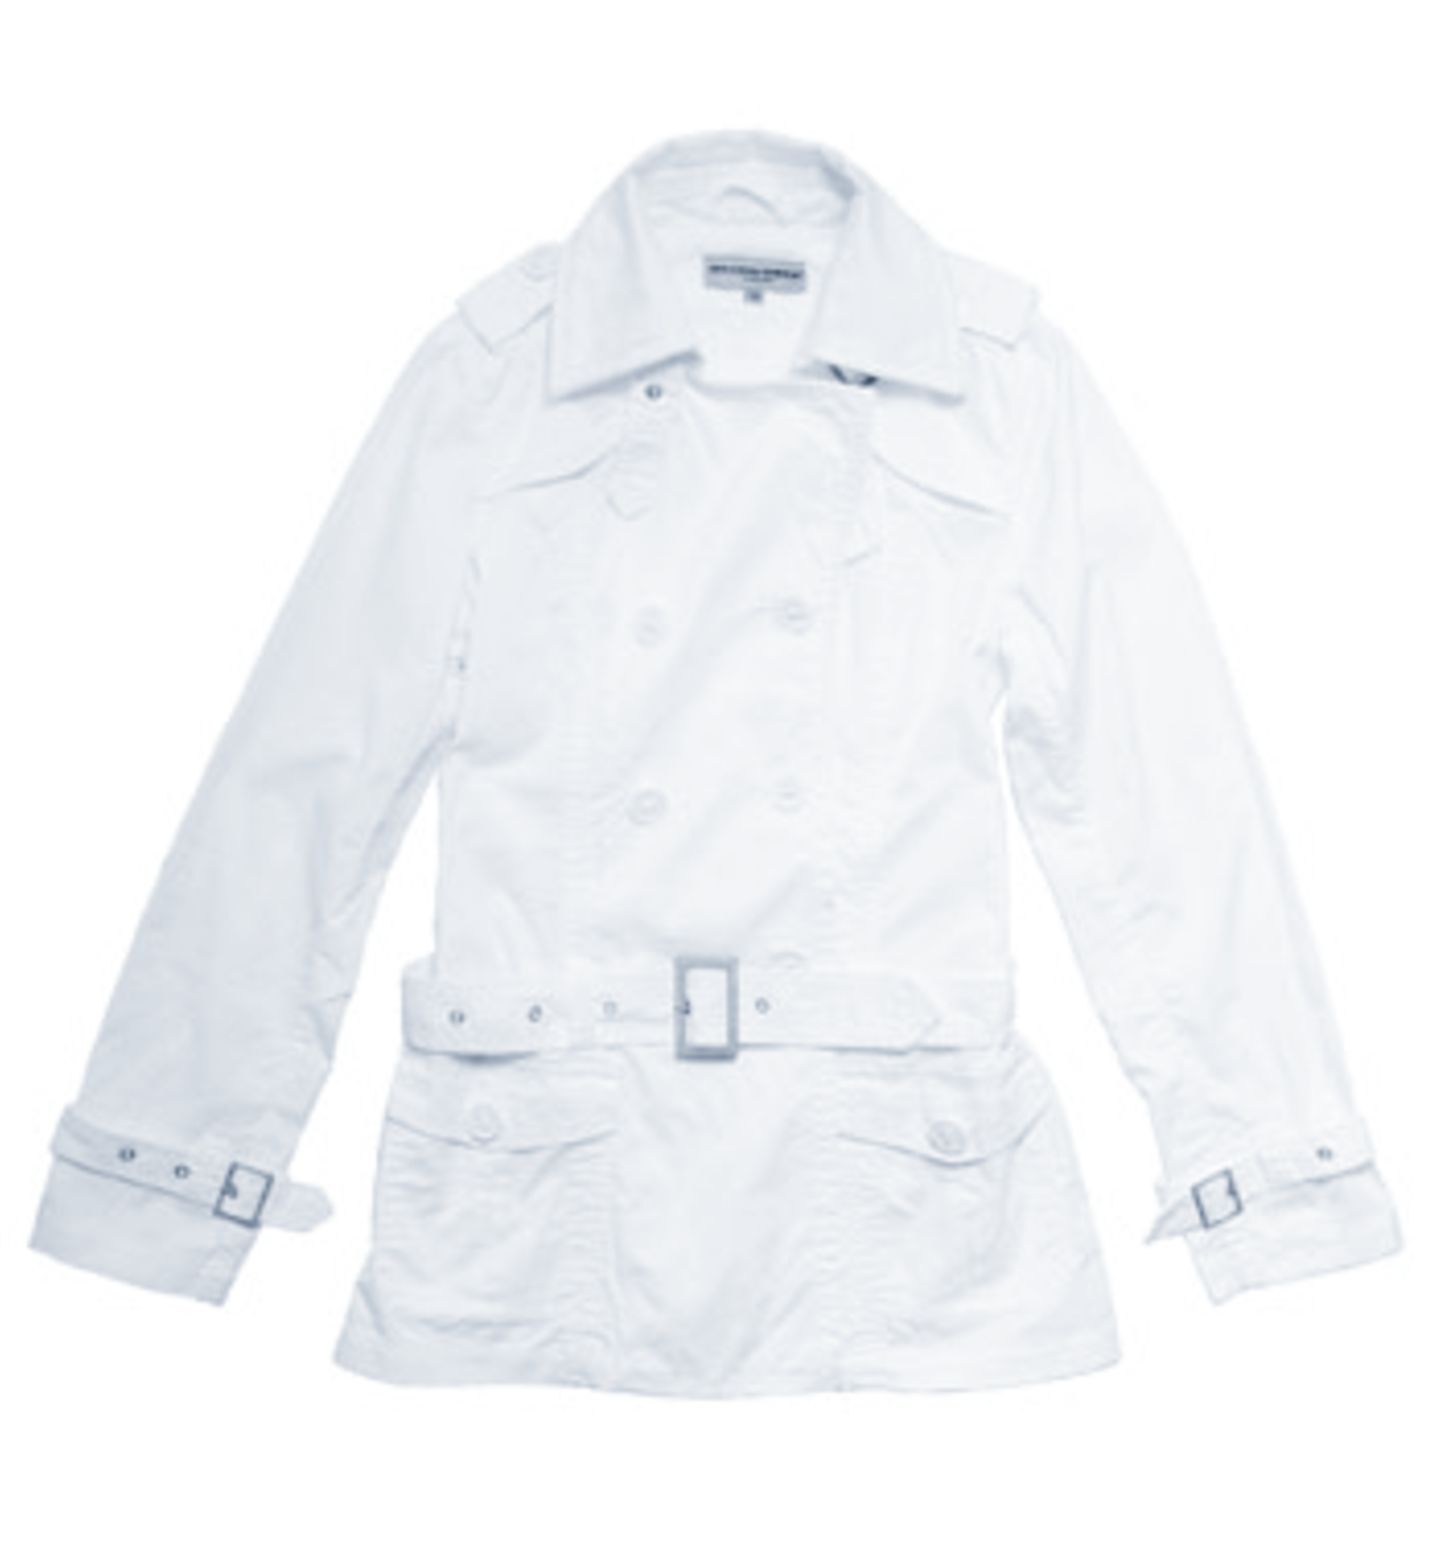 Weißer Trenchcoat; 39,95 Euro; von mister.lady